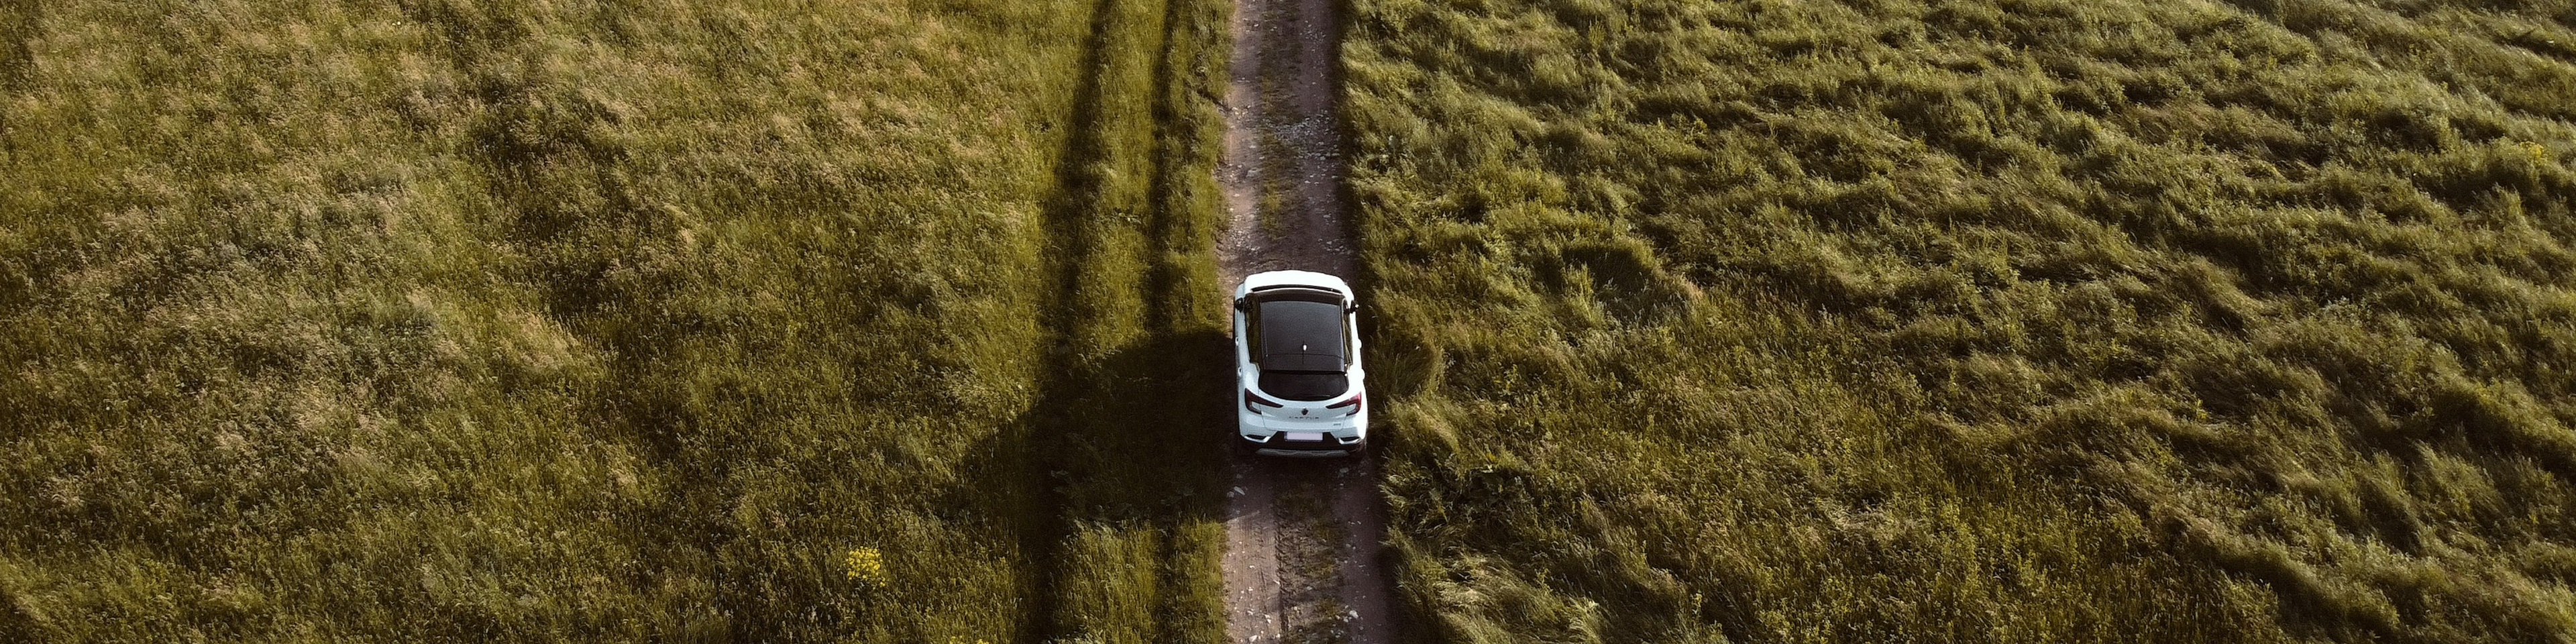 EV driving through a field